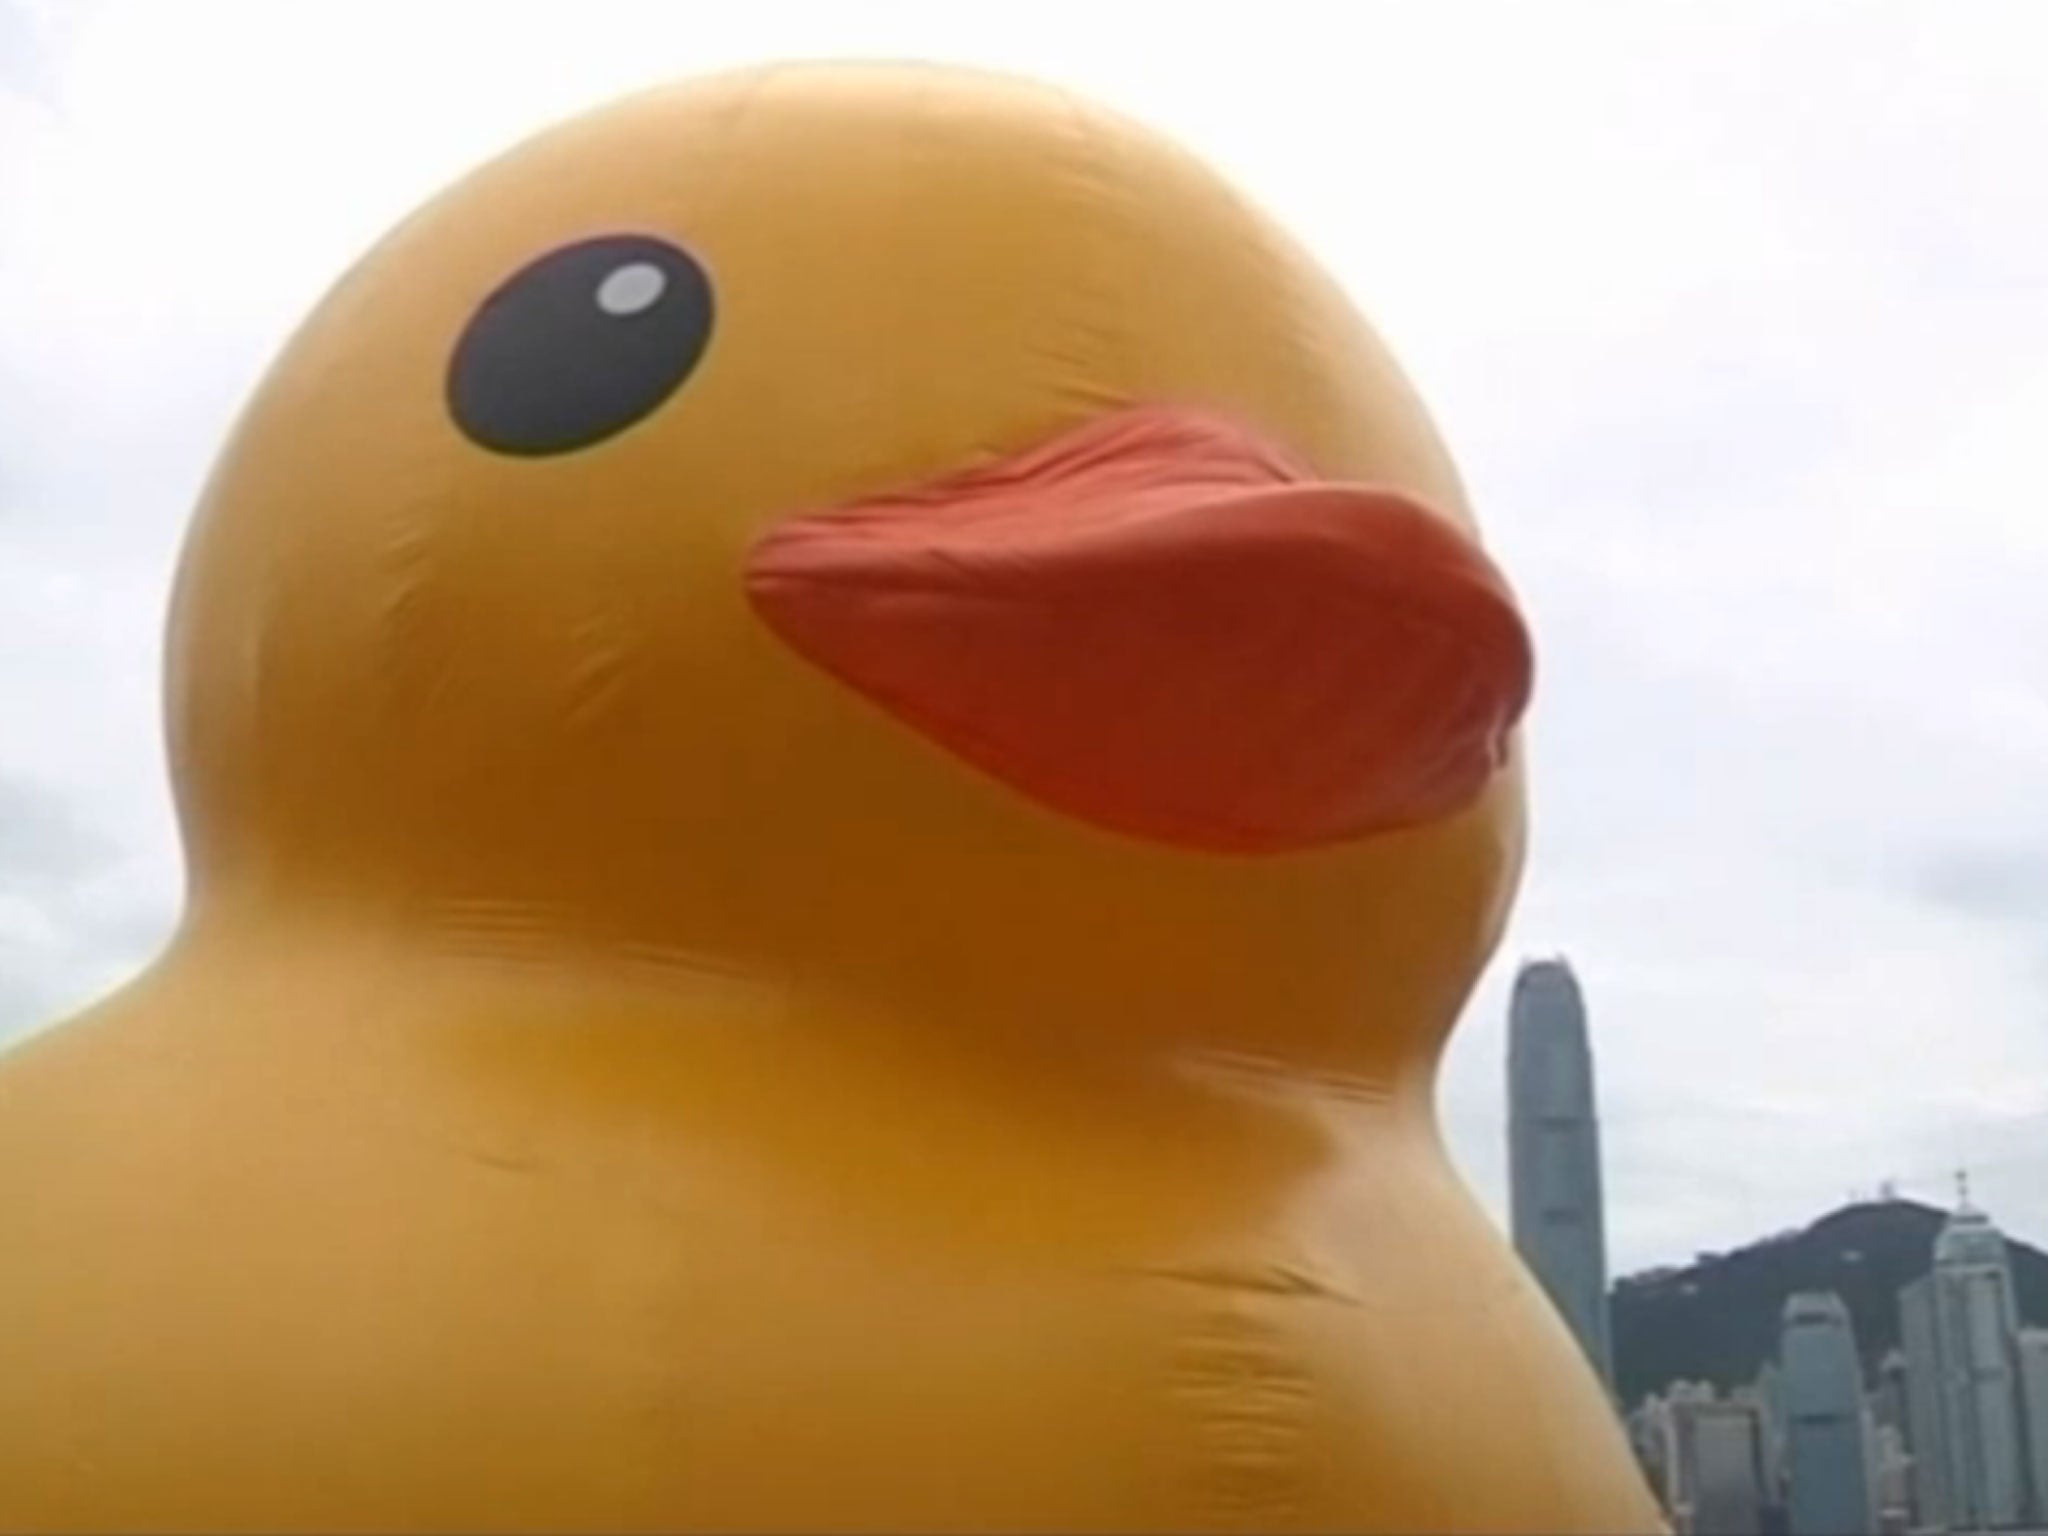 Florentijn Hofman's giant duck is quackers